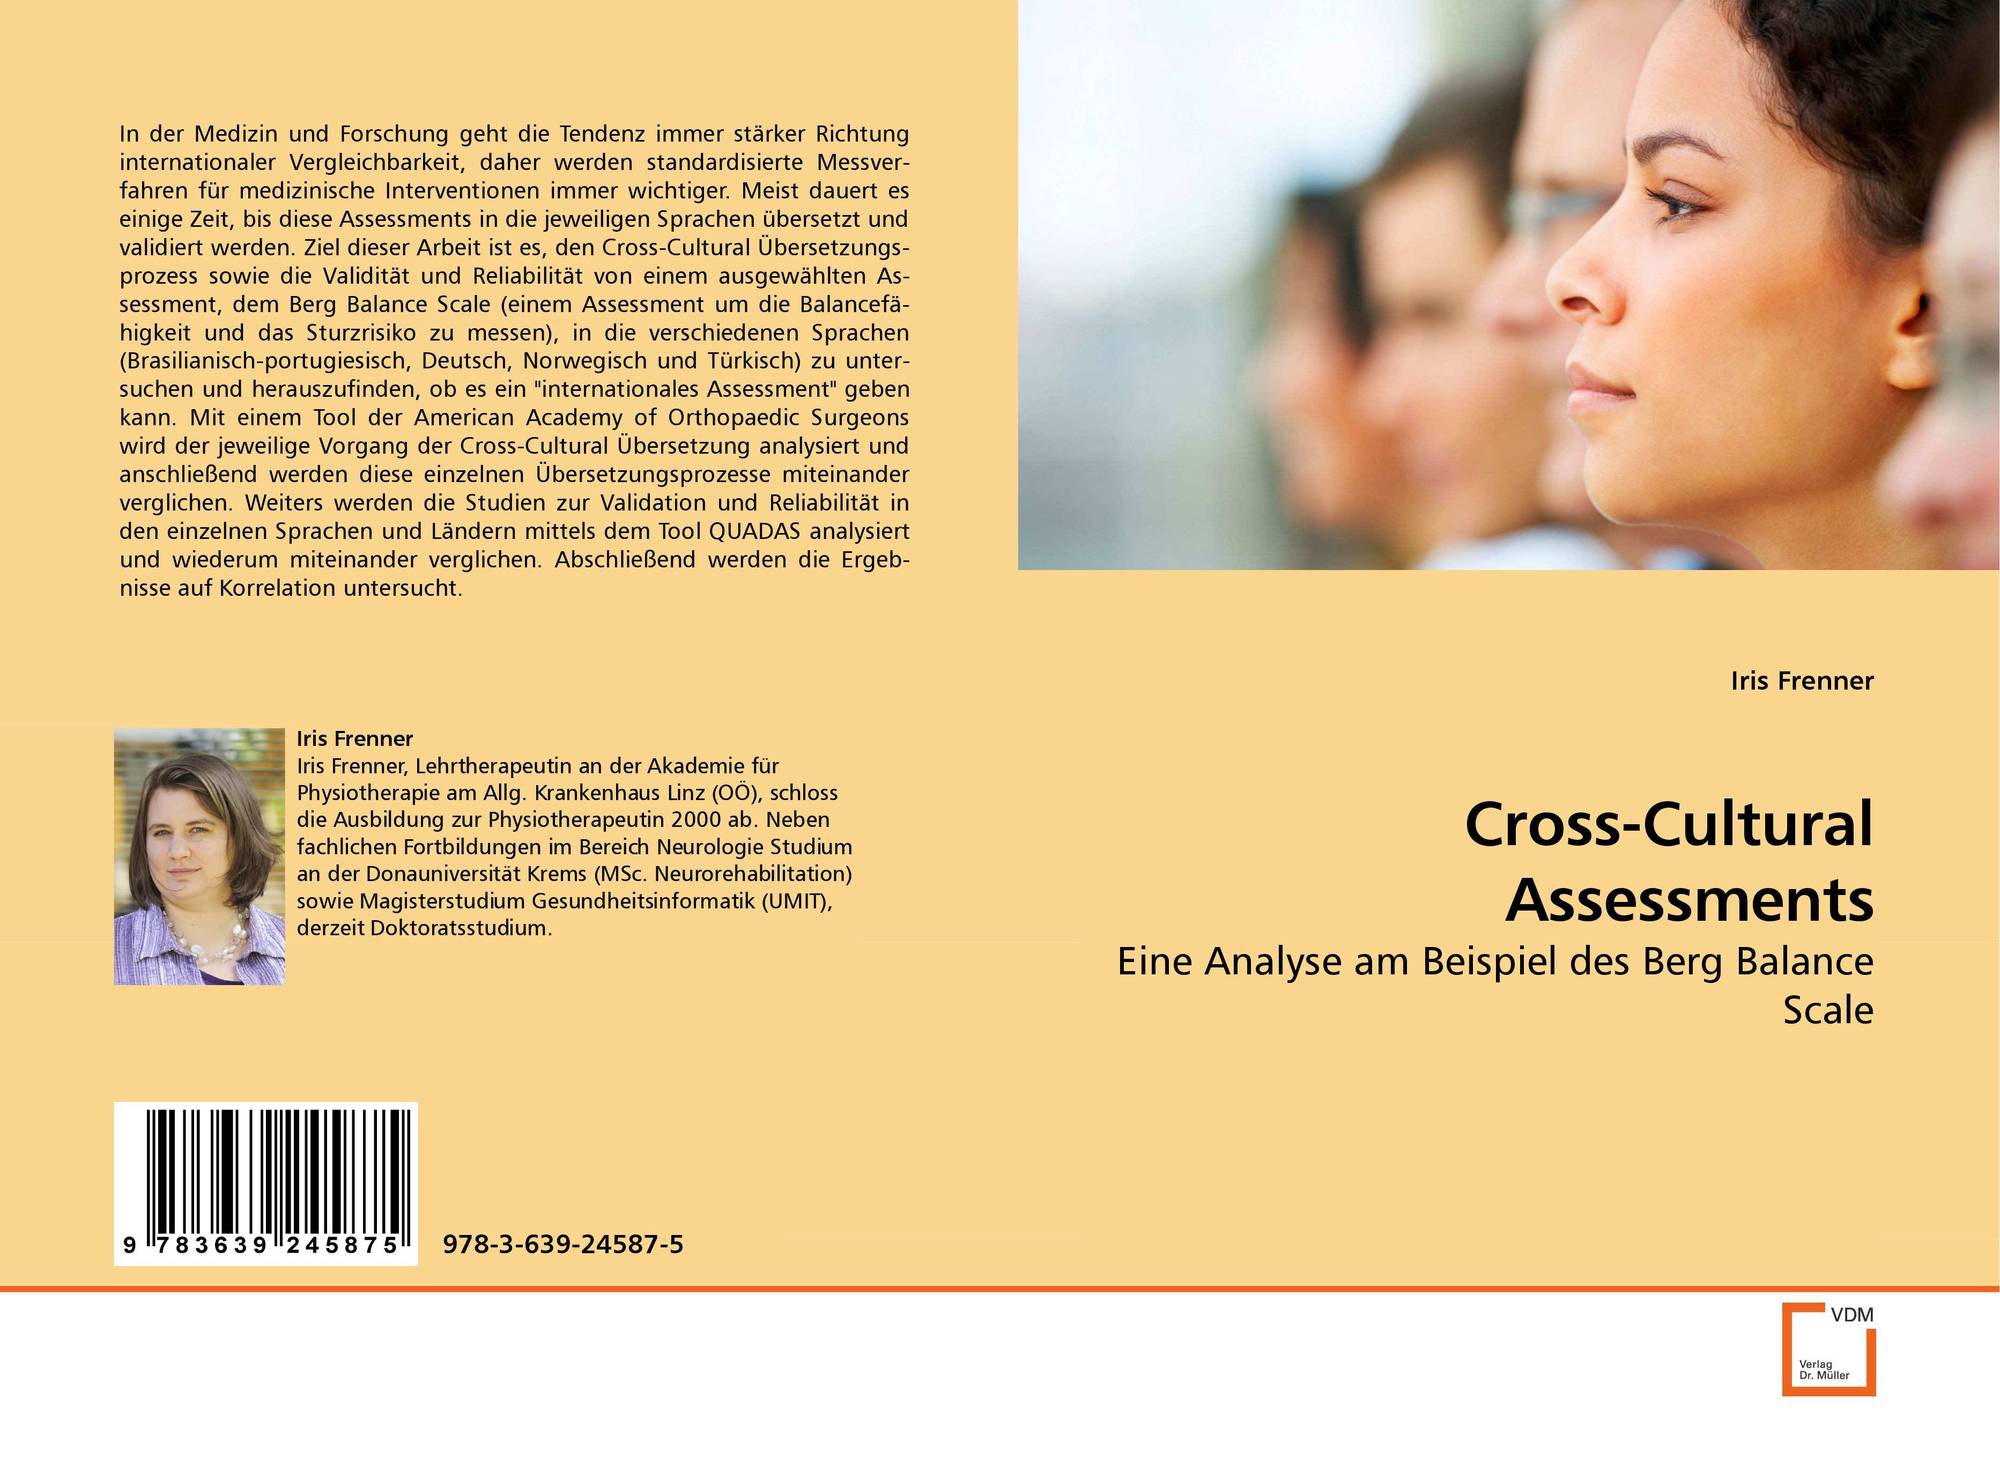 Cross-Cultural Assessments, 978-3-639-24587-5, 3639245873